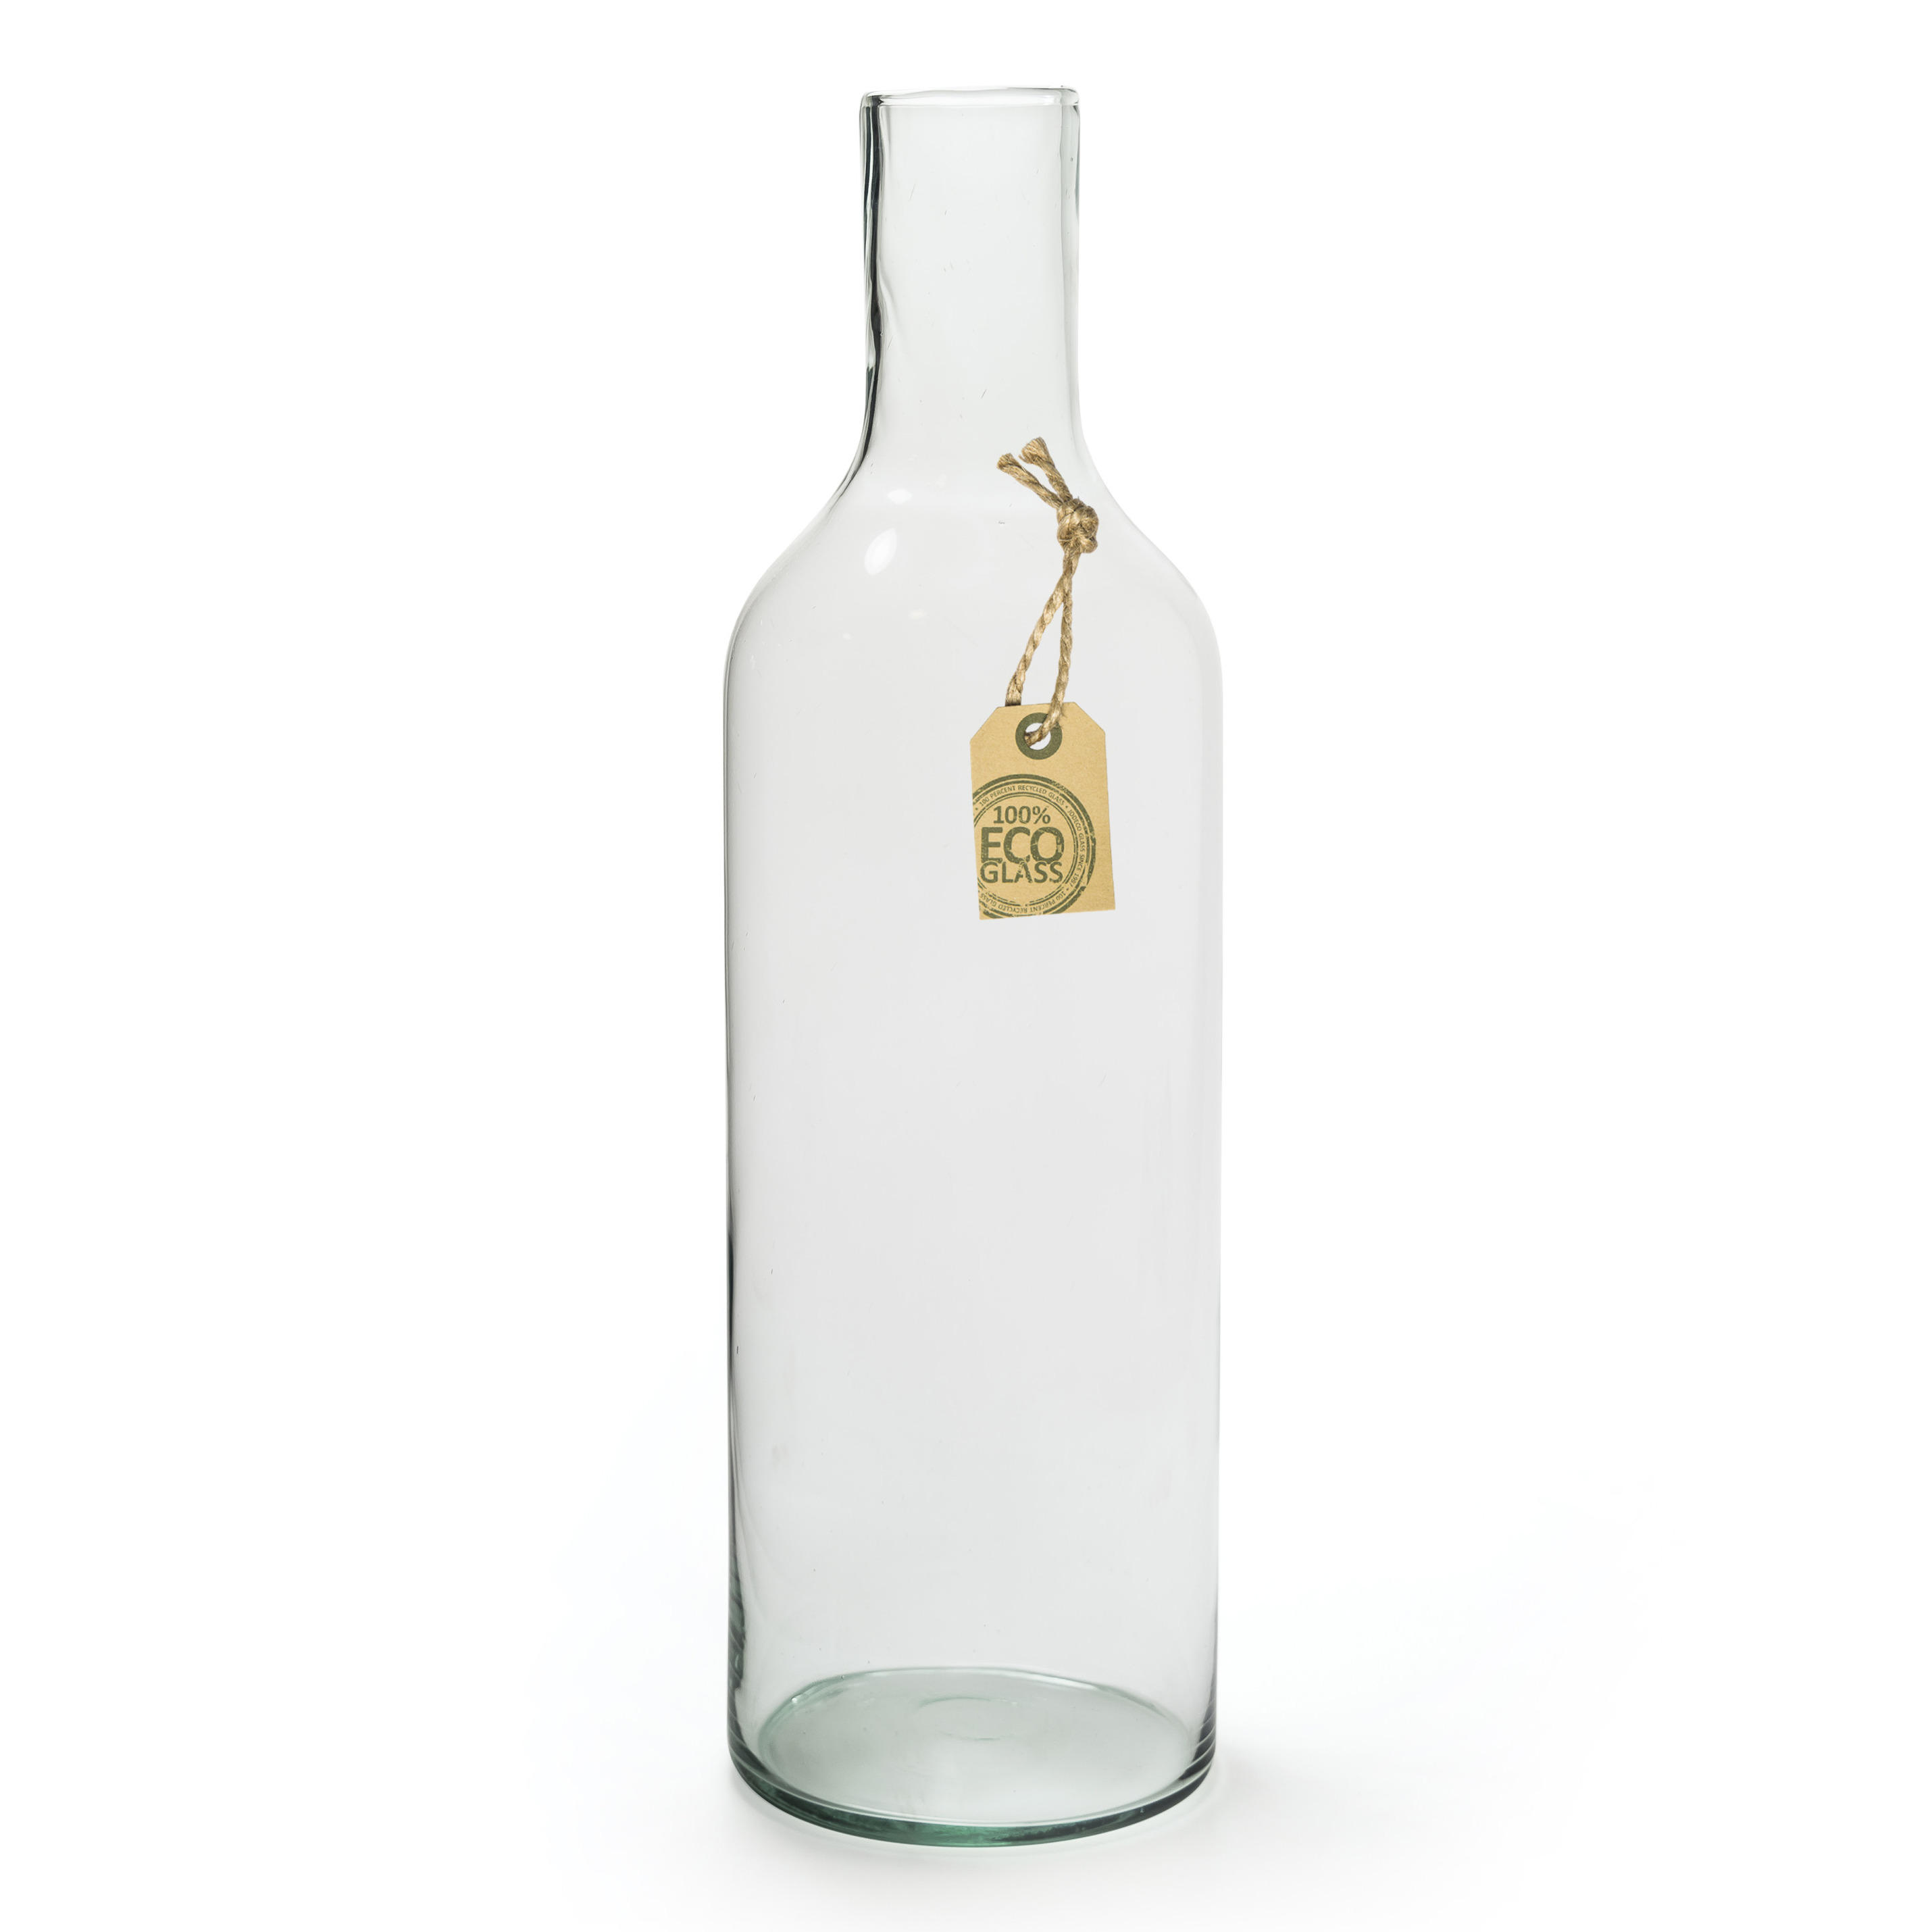 Merkloos Transparante fles vaas/vazen van eco glas 15 x 53 cm -